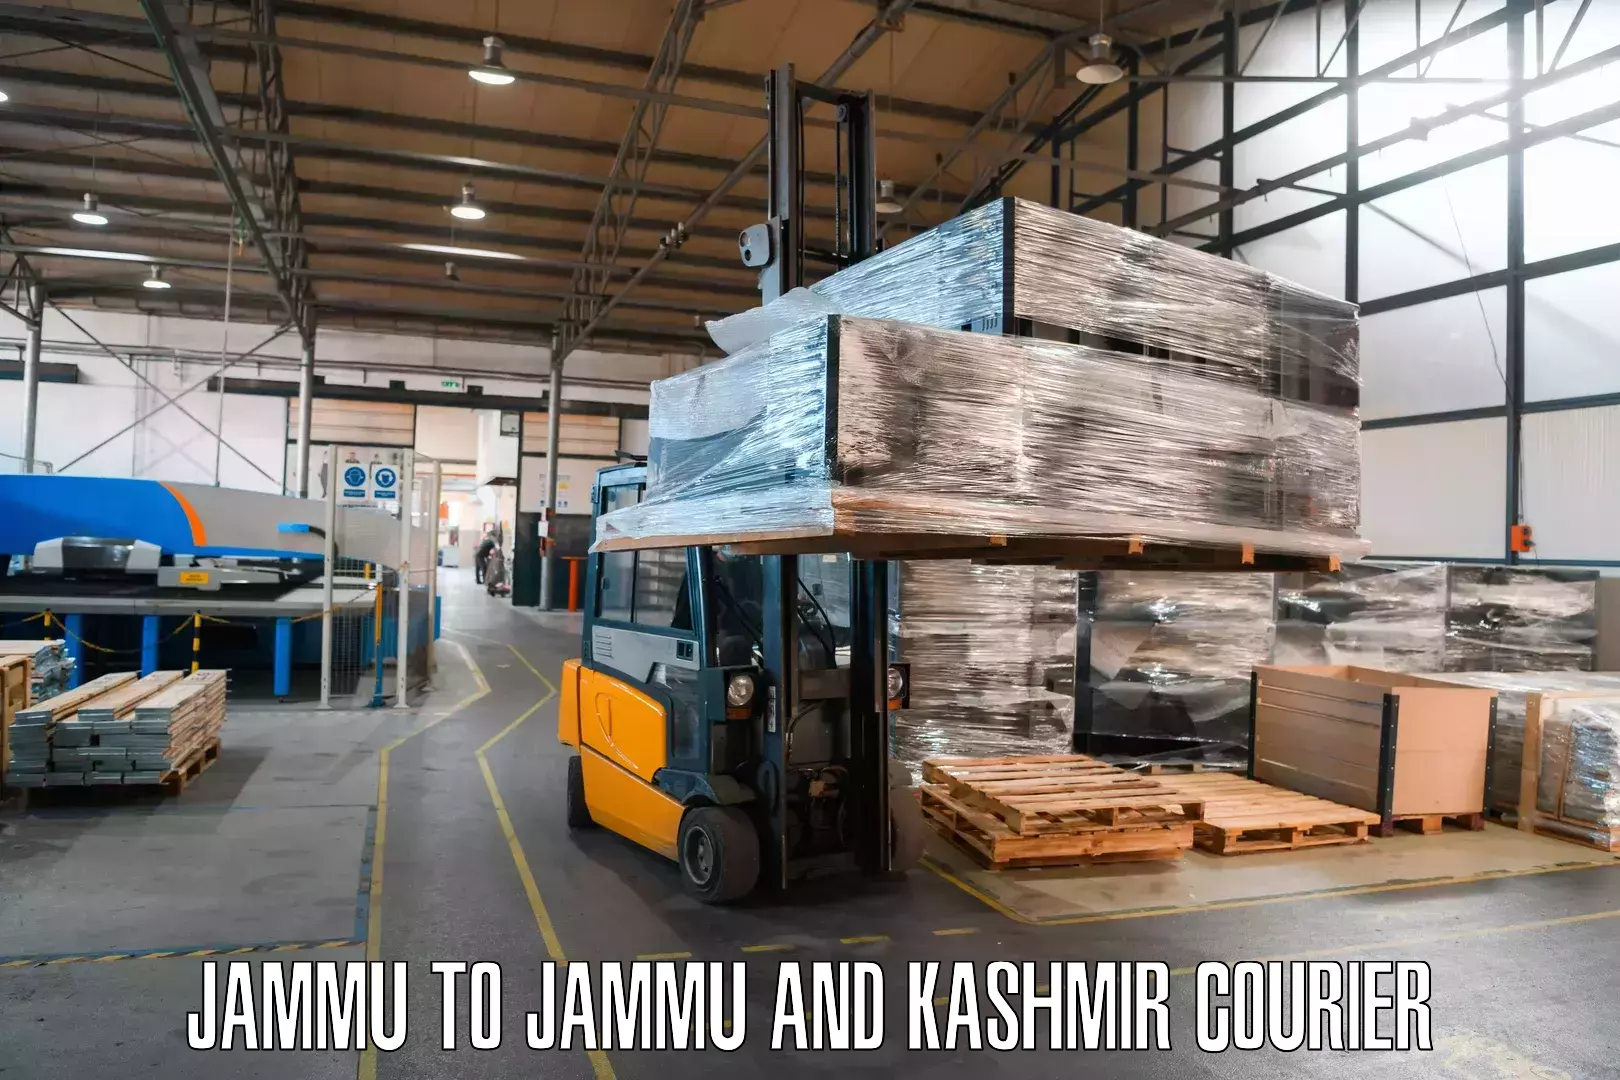 Courier service comparison Jammu to Bohri